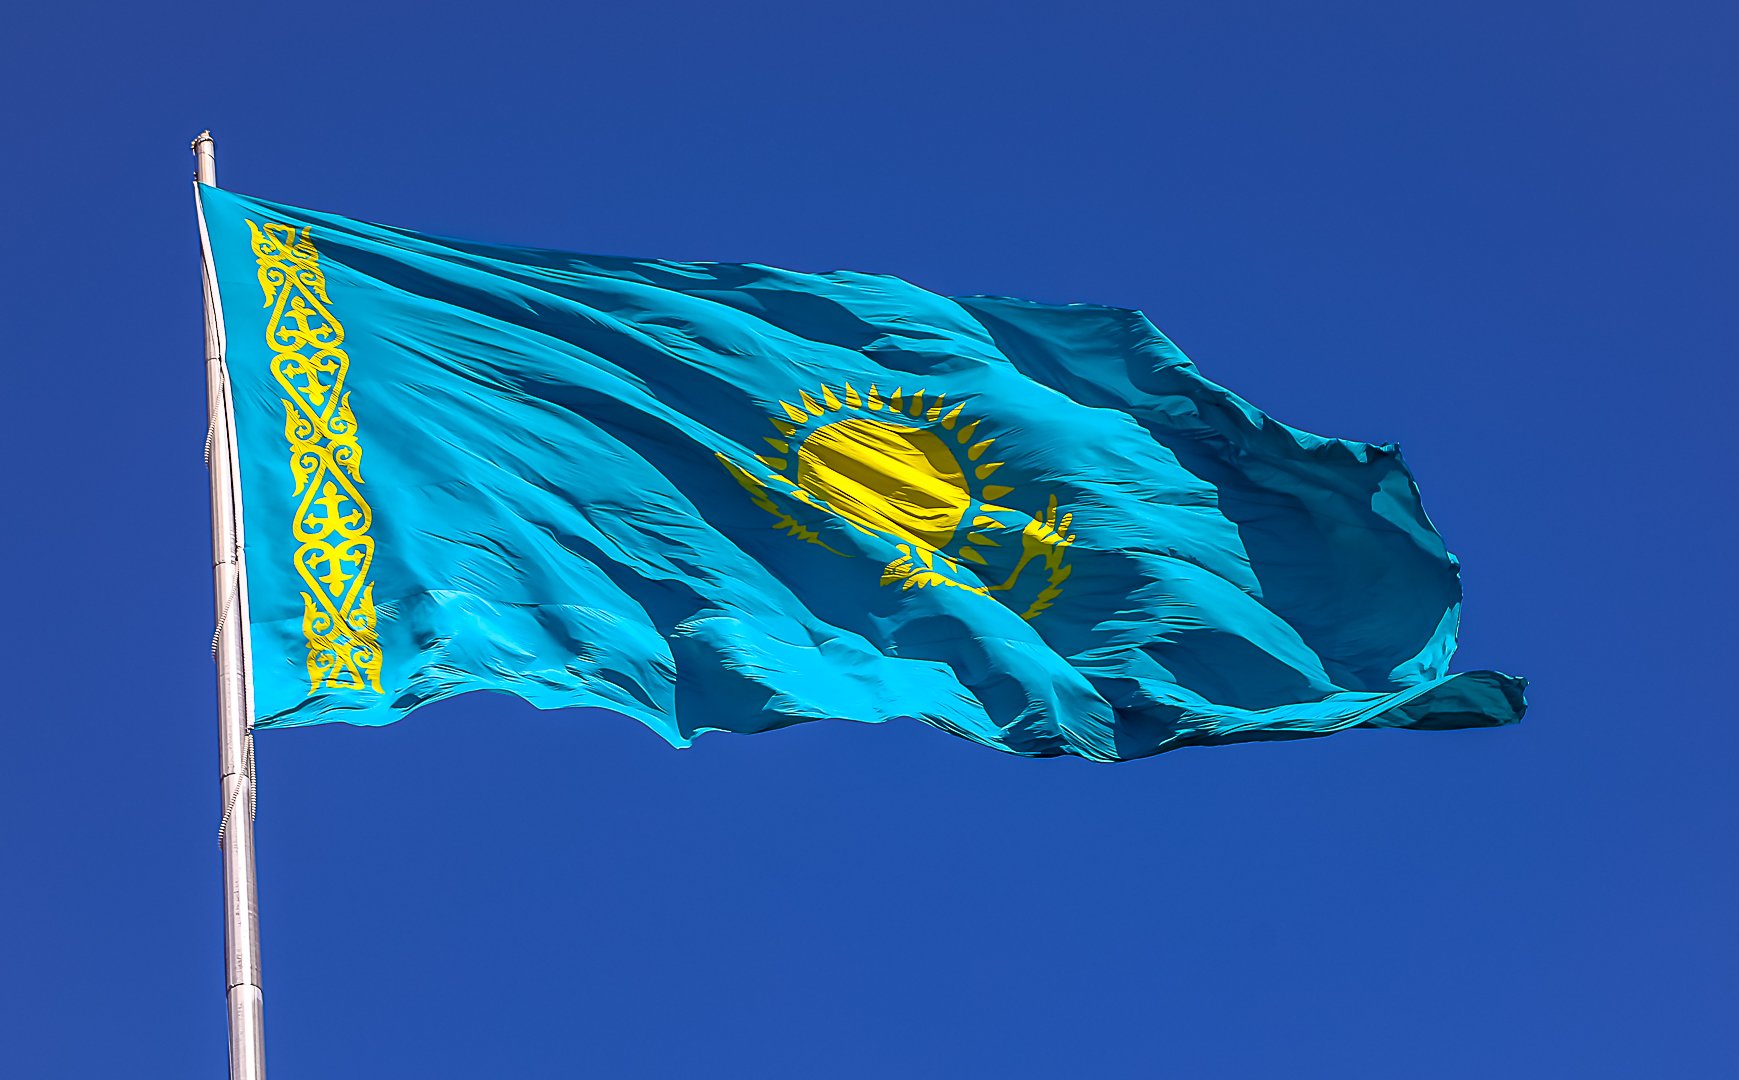 Kazakhstan stands for strengthening multilateral non-proliferation regimes